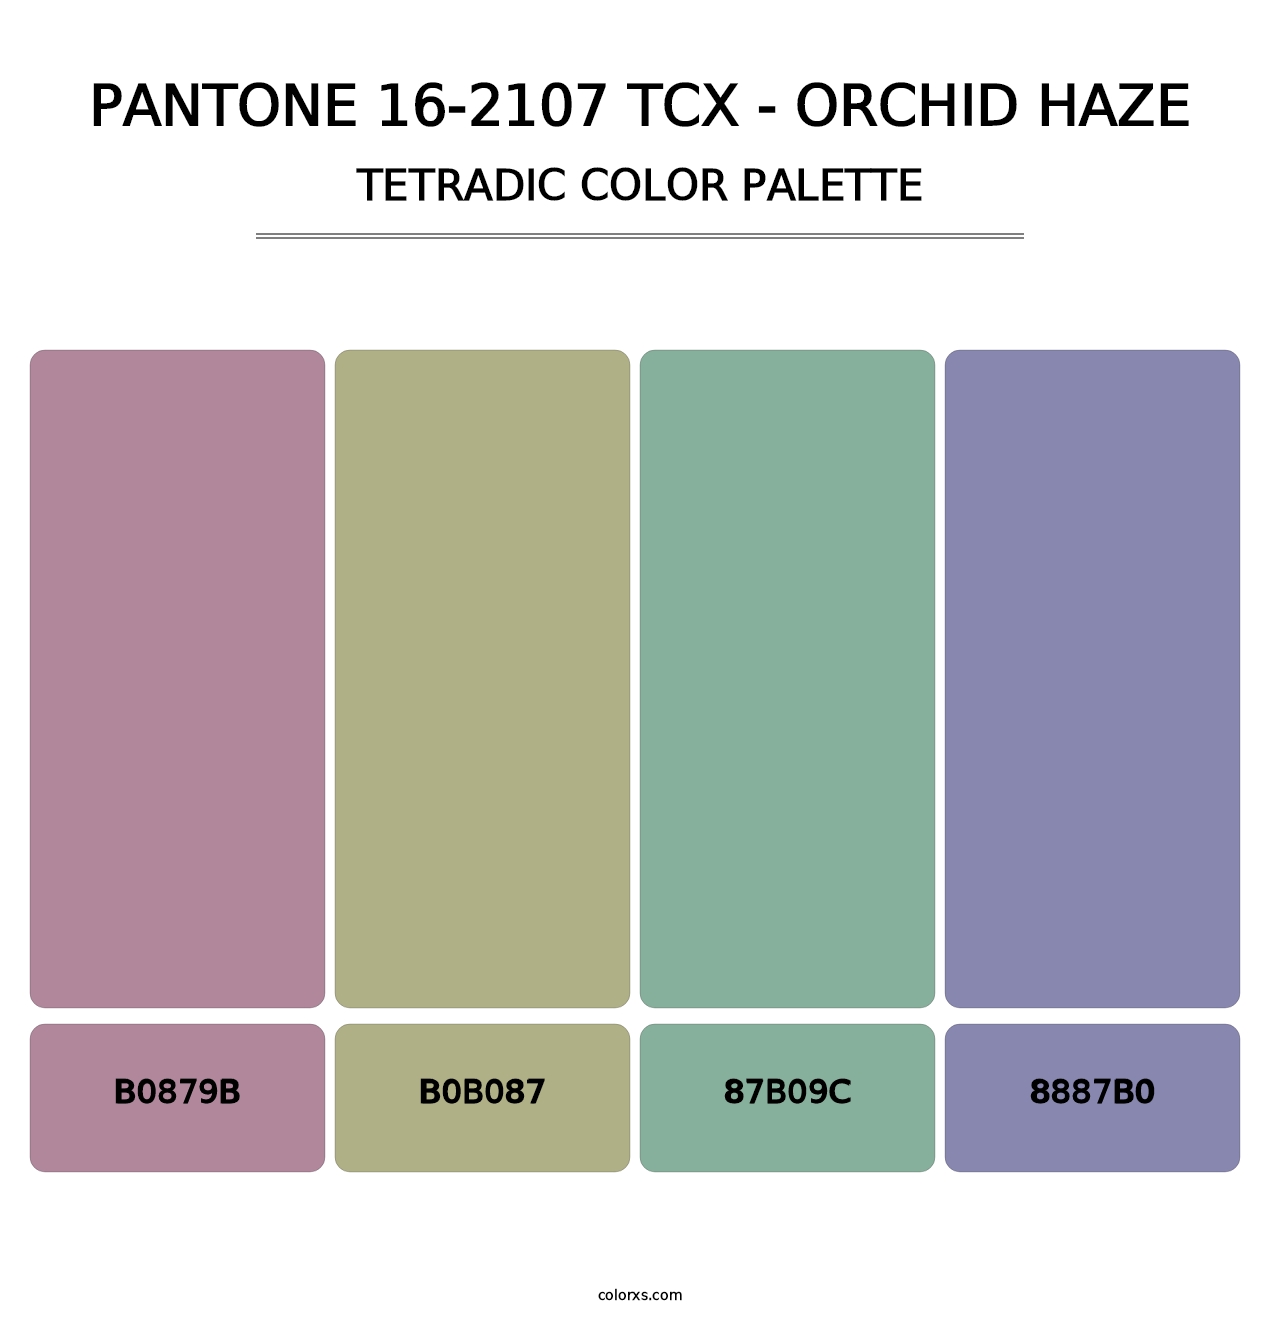 PANTONE 16-2107 TCX - Orchid Haze - Tetradic Color Palette